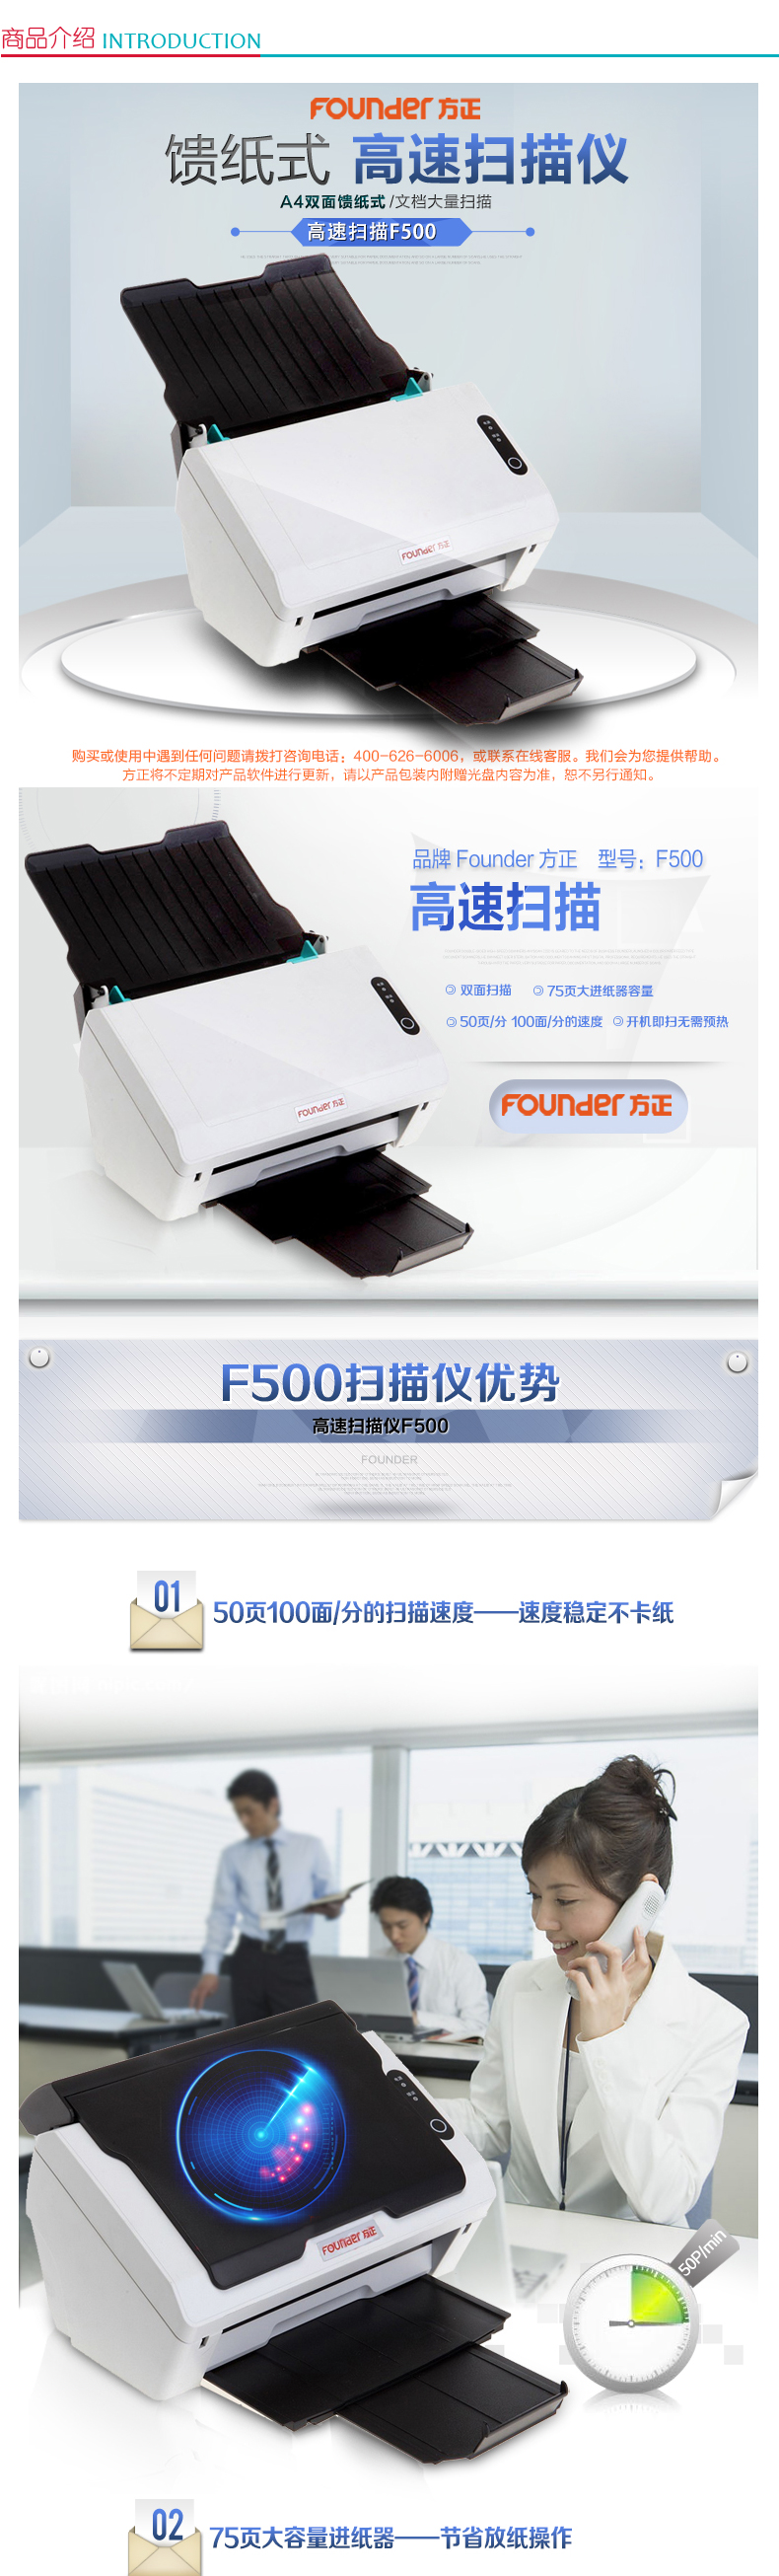 方正 Founder A4馈纸式双面高速扫描仪 F500 